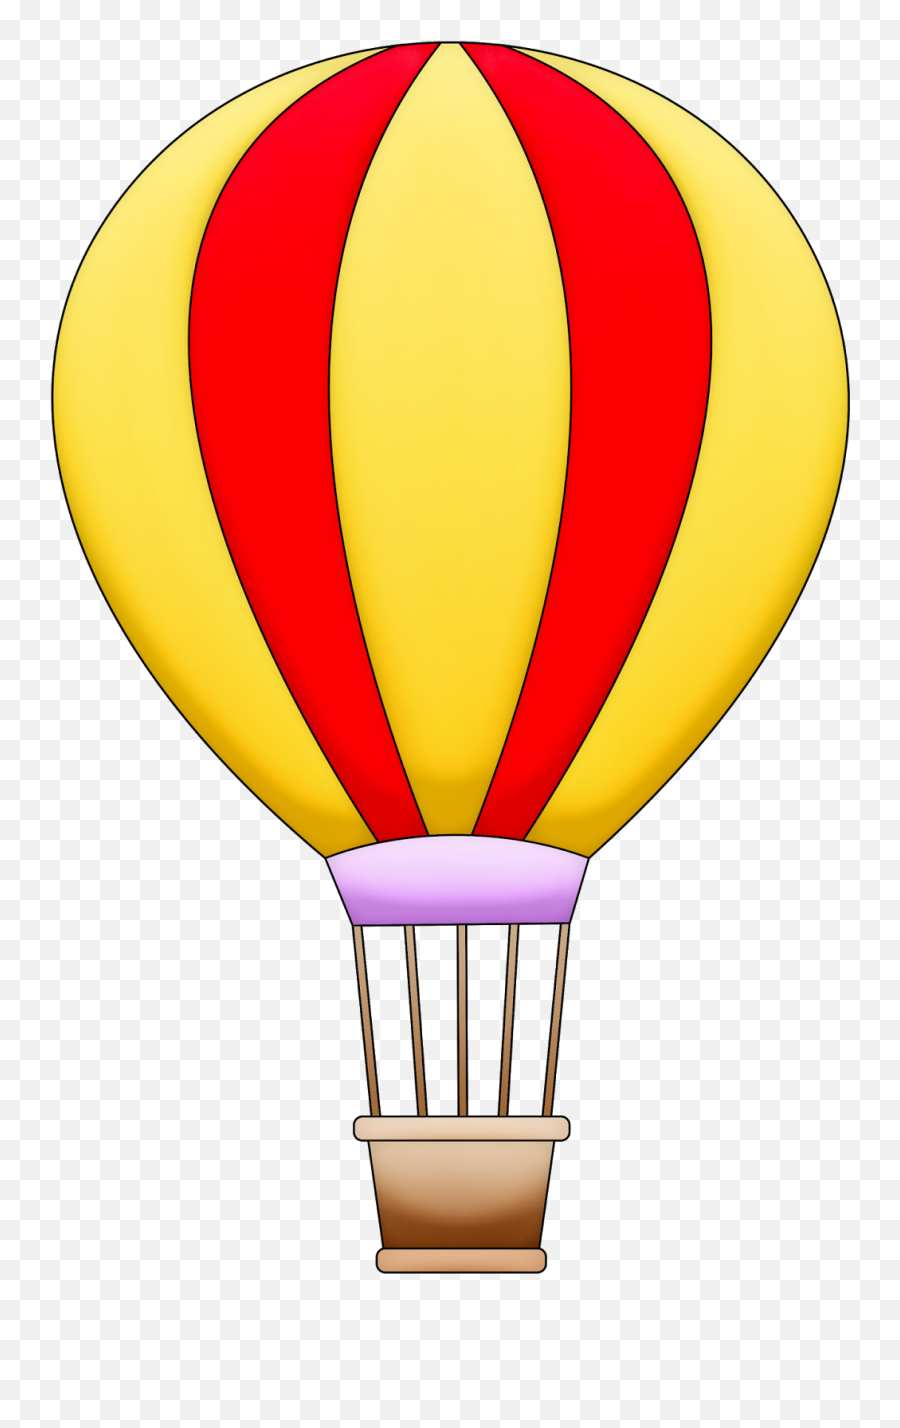 Pin På Auladecoraciónorganización - Hot Air Balloon Dibujo Emoji,Hot Air Balloon Emoji